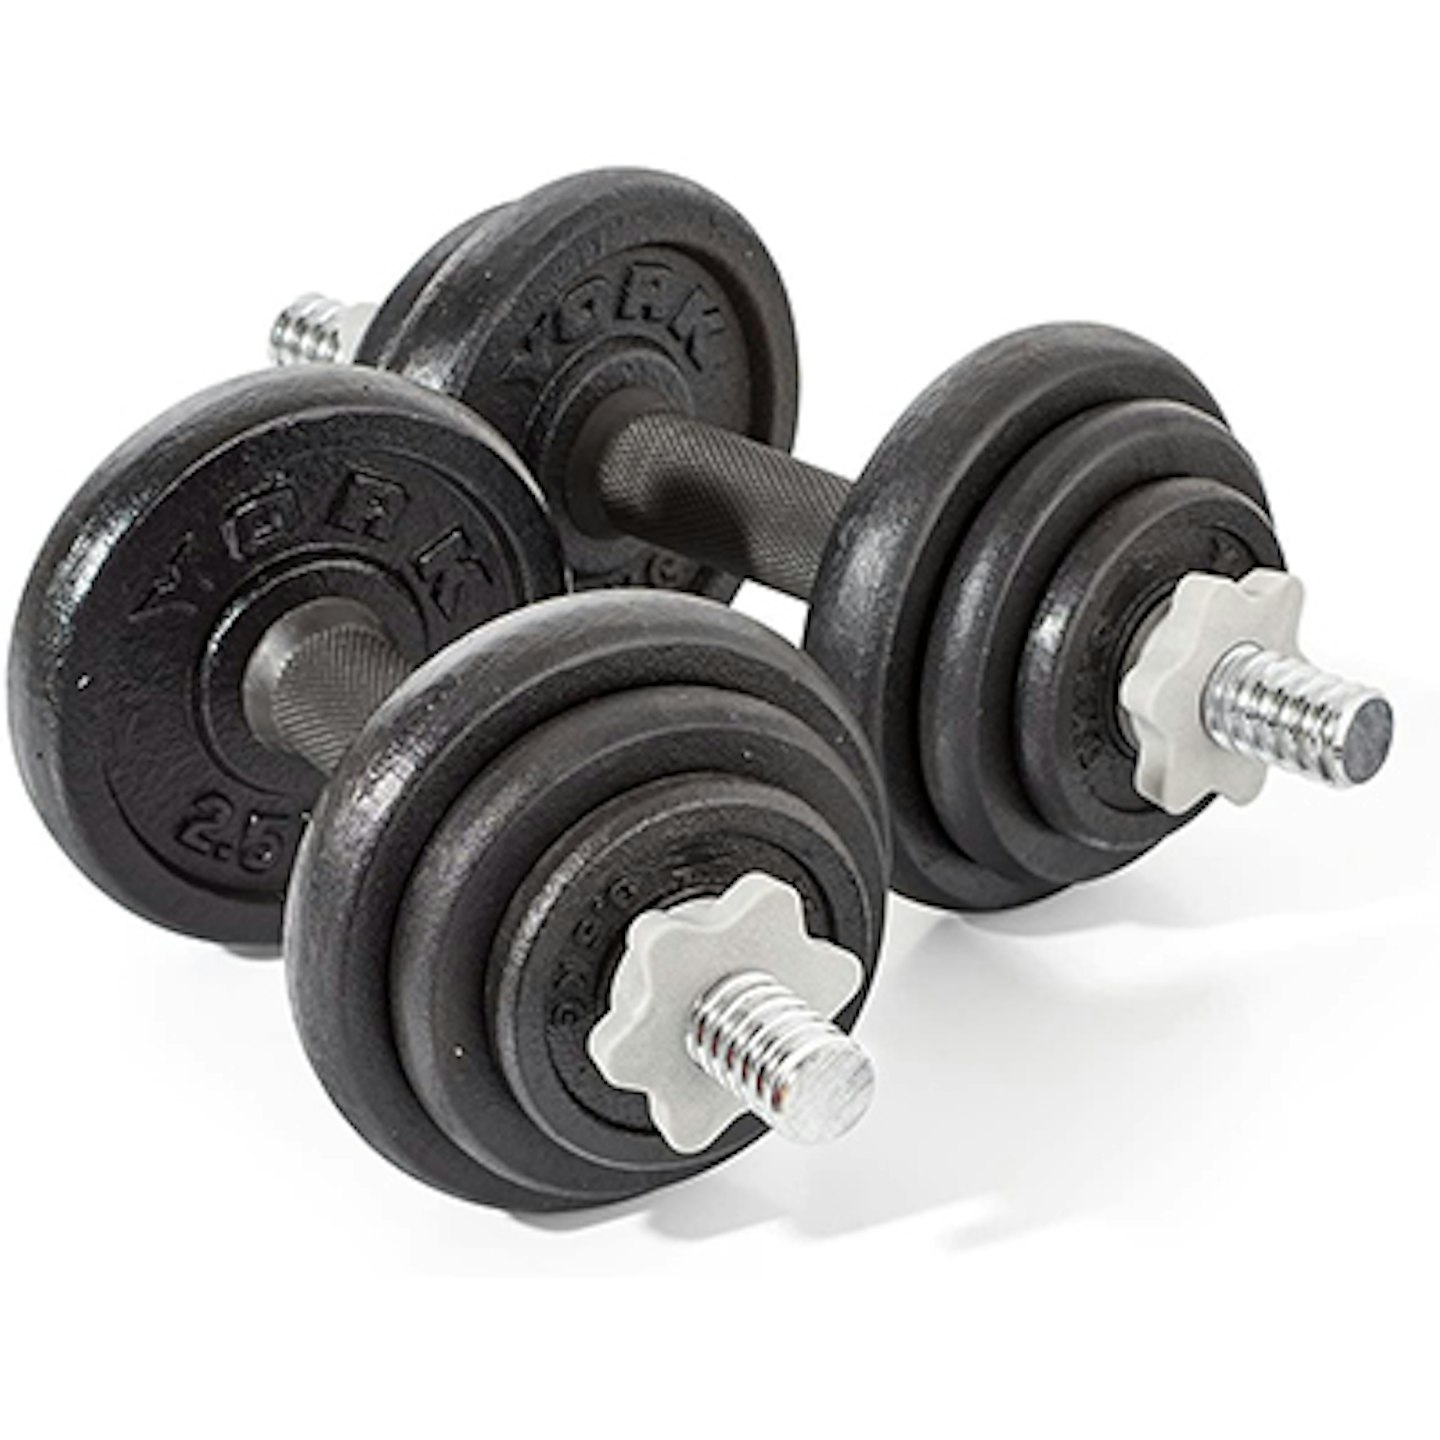 York Fitness 20 kg Cast Iron Spinlock Dumbbell